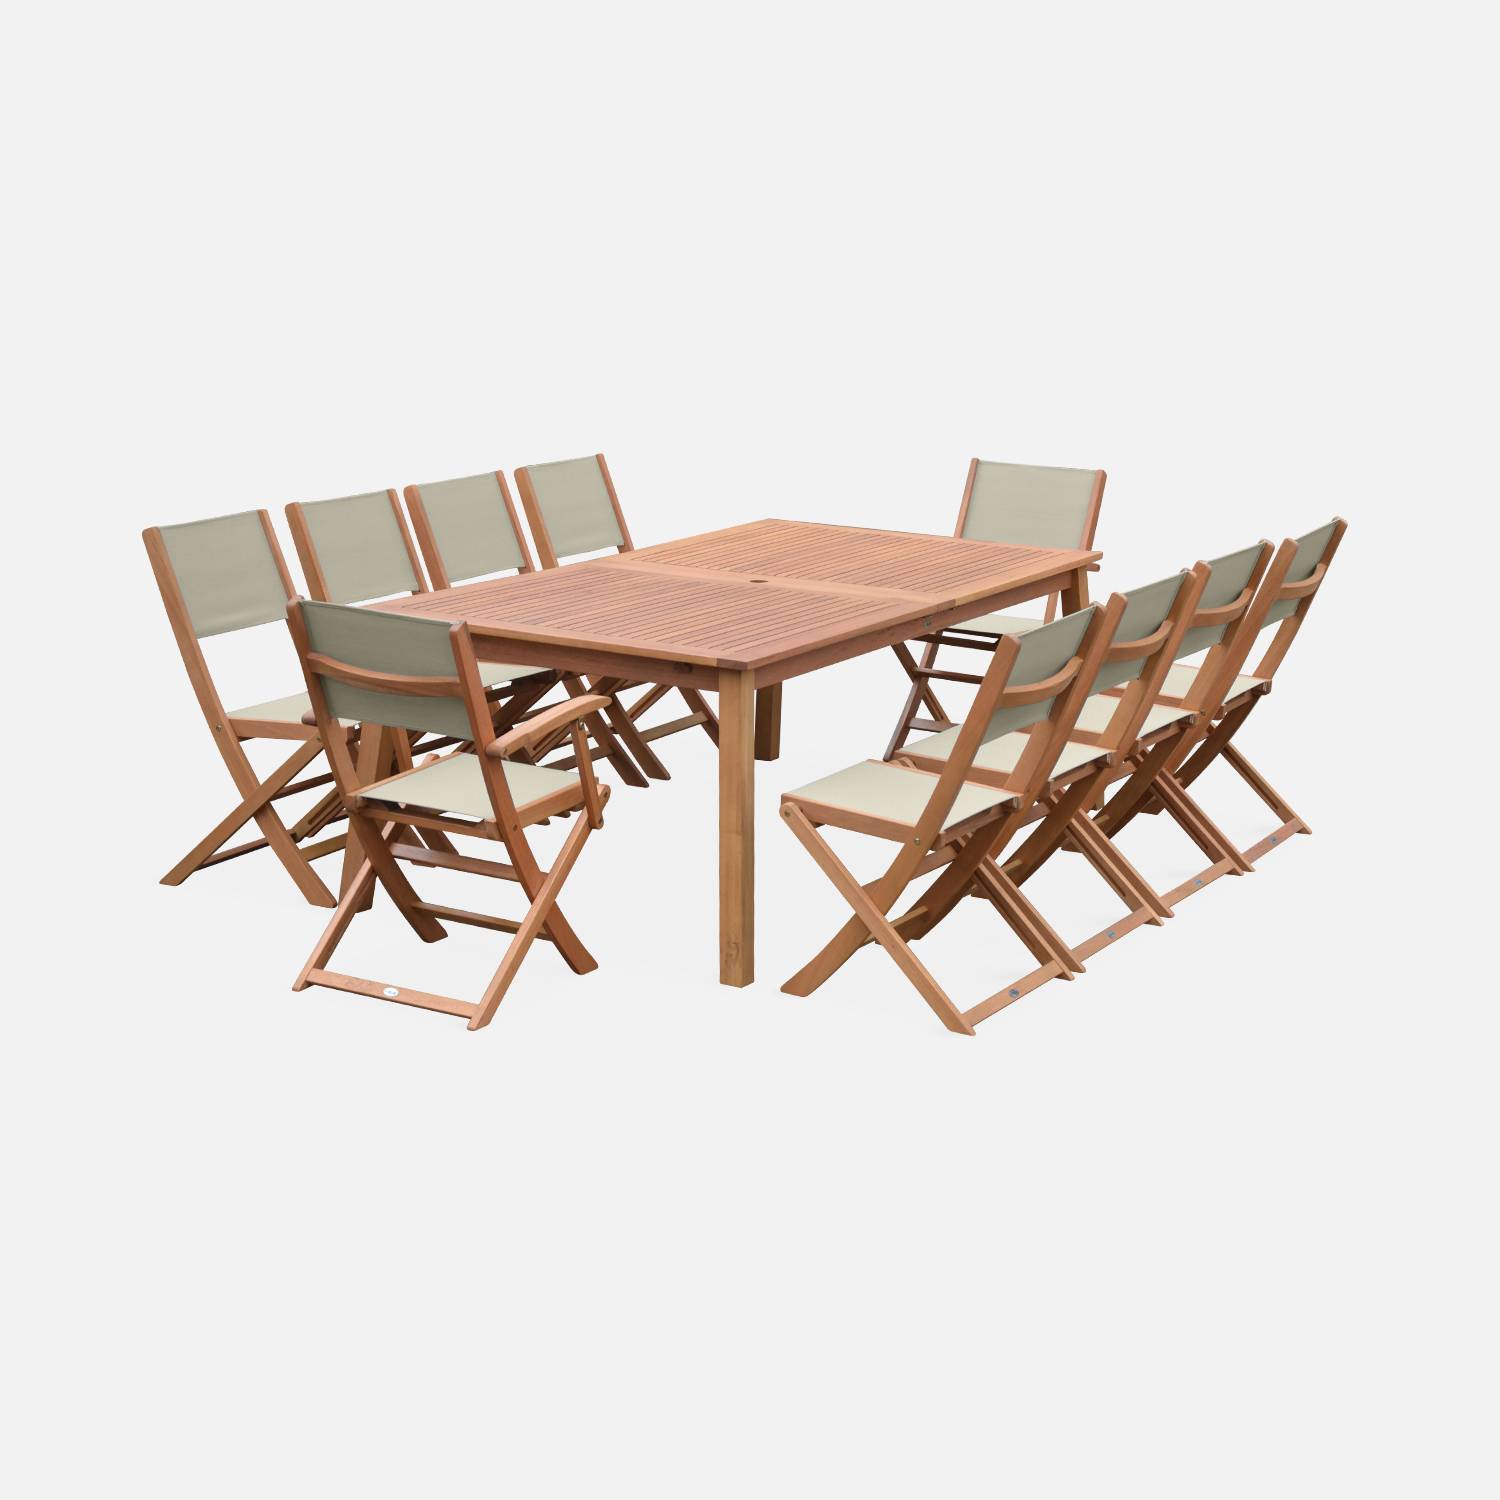 Ausziehbare Gartenmöbel aus Holz - Almeria Tisch 200/250/300cm mit 2 Verlängerungen, 2 Sesseln und 8 Stühlen, aus geöltem FSC Eukalyptusholz und taupgrau Textilene Photo4